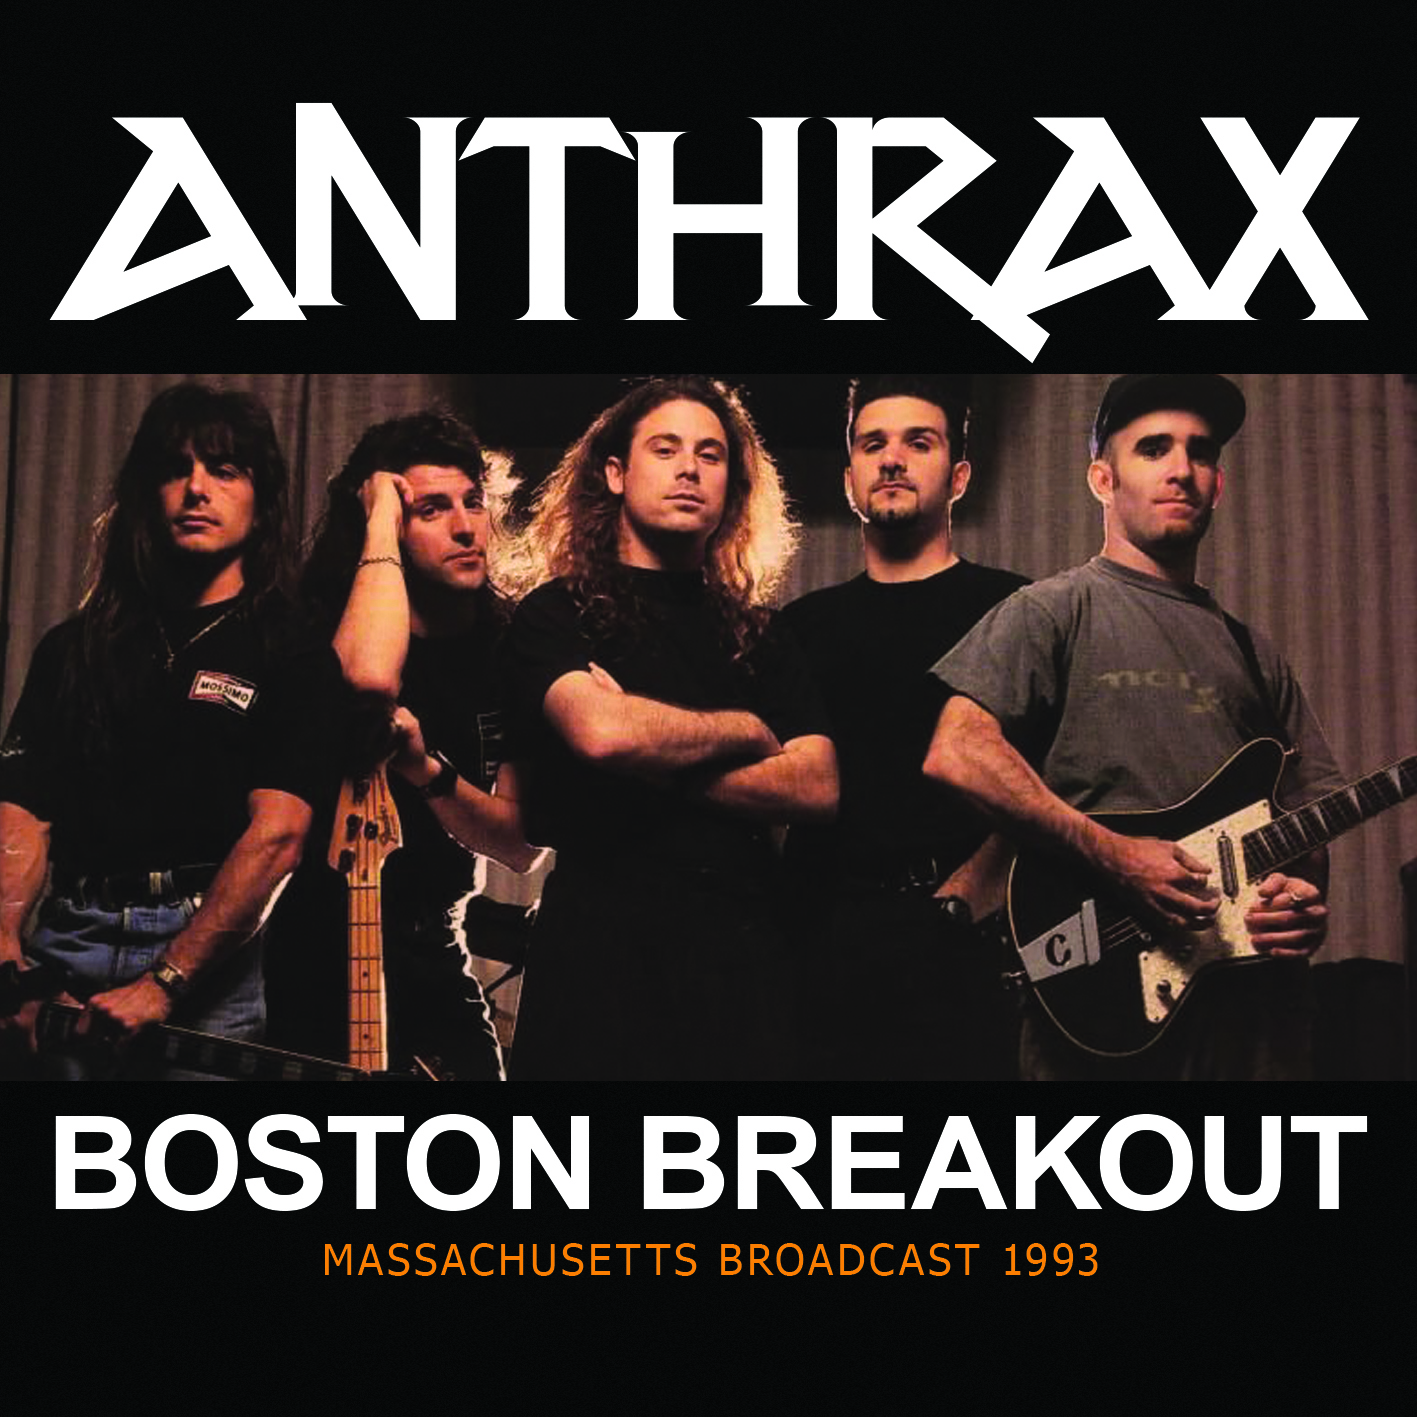 Anthrax Boston Breakout MVD Entertainment Group B2B